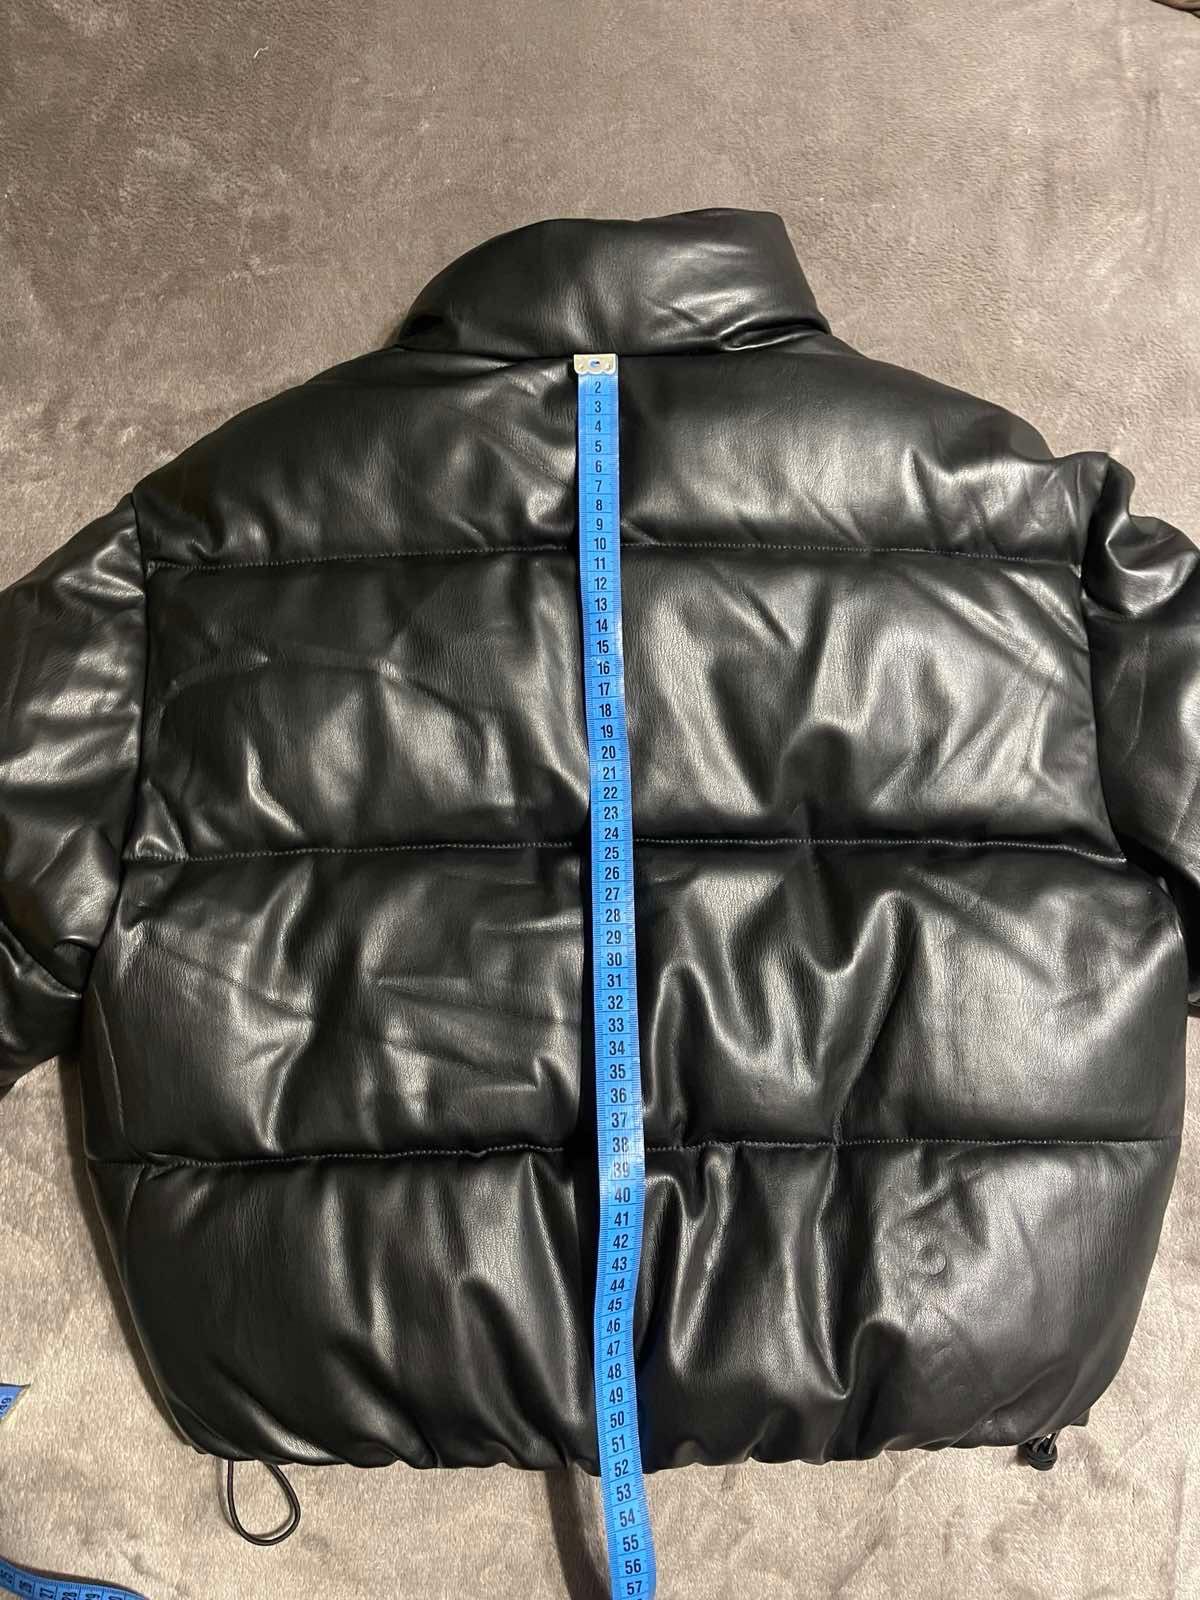 Зимова куртка Zara xs(більшомірить)